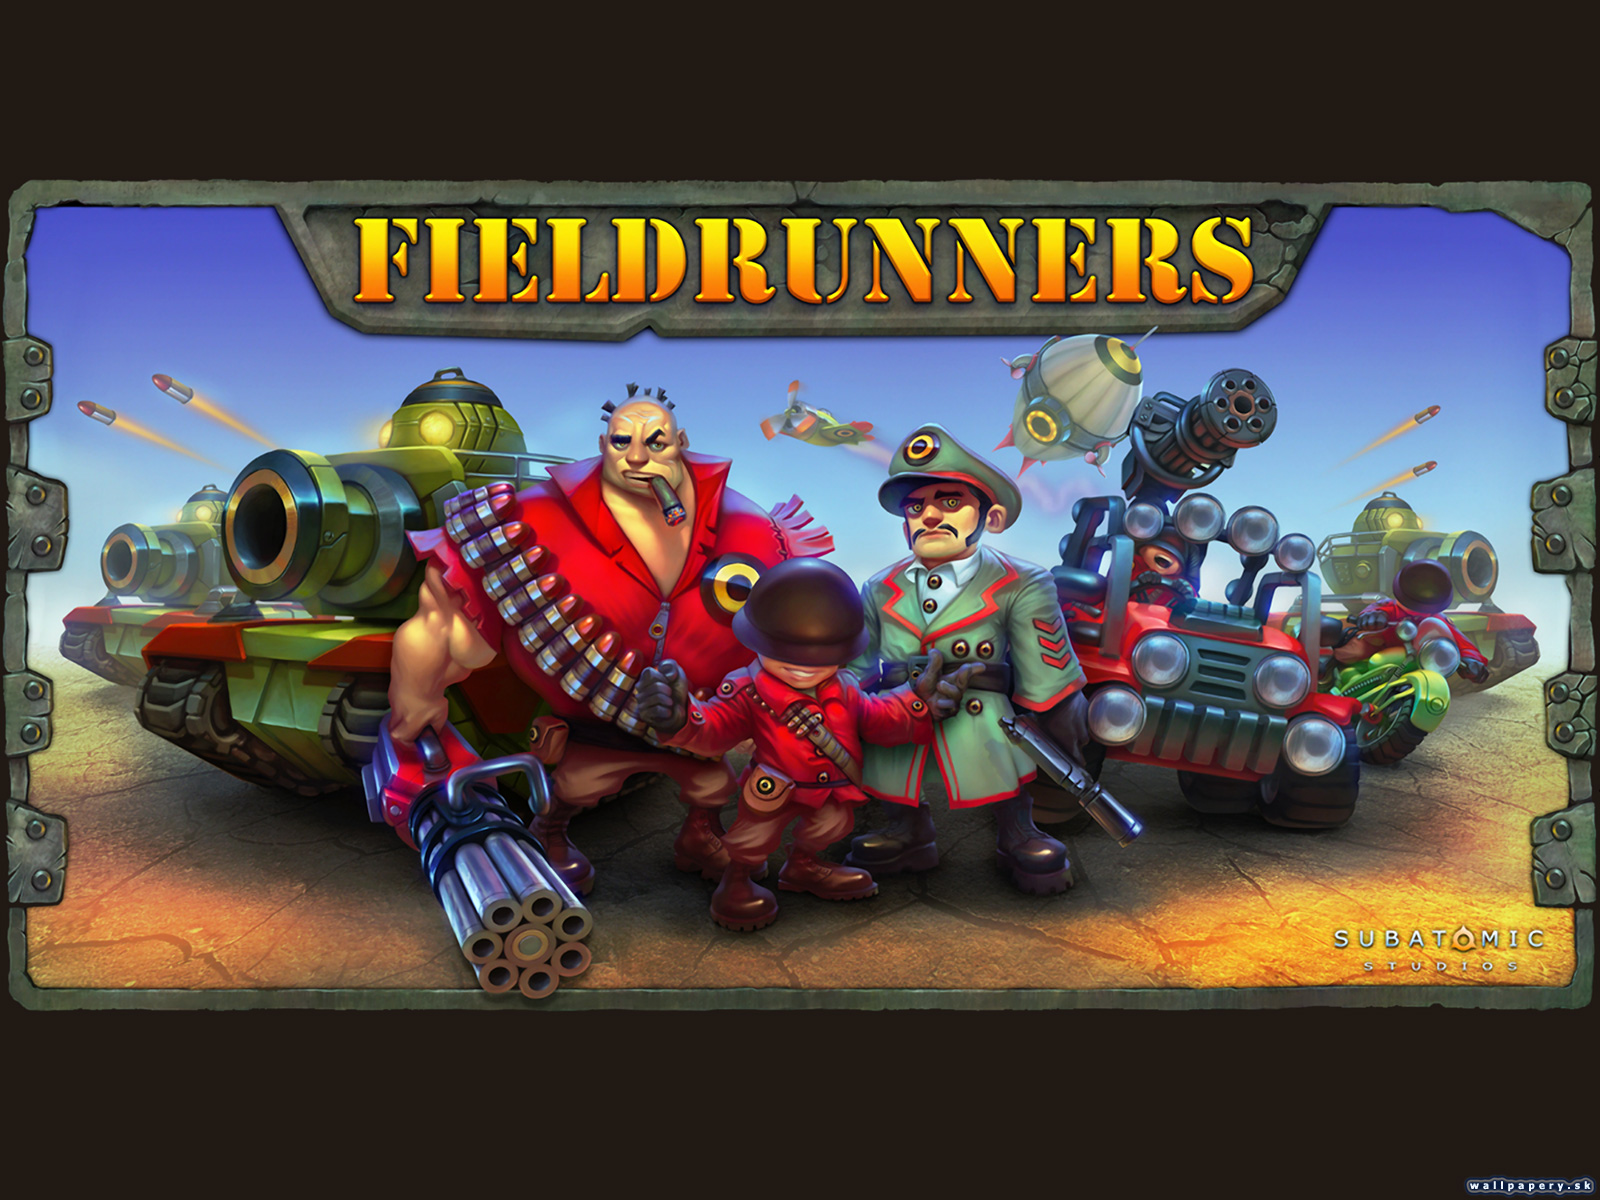 Fieldrunners - wallpaper 2